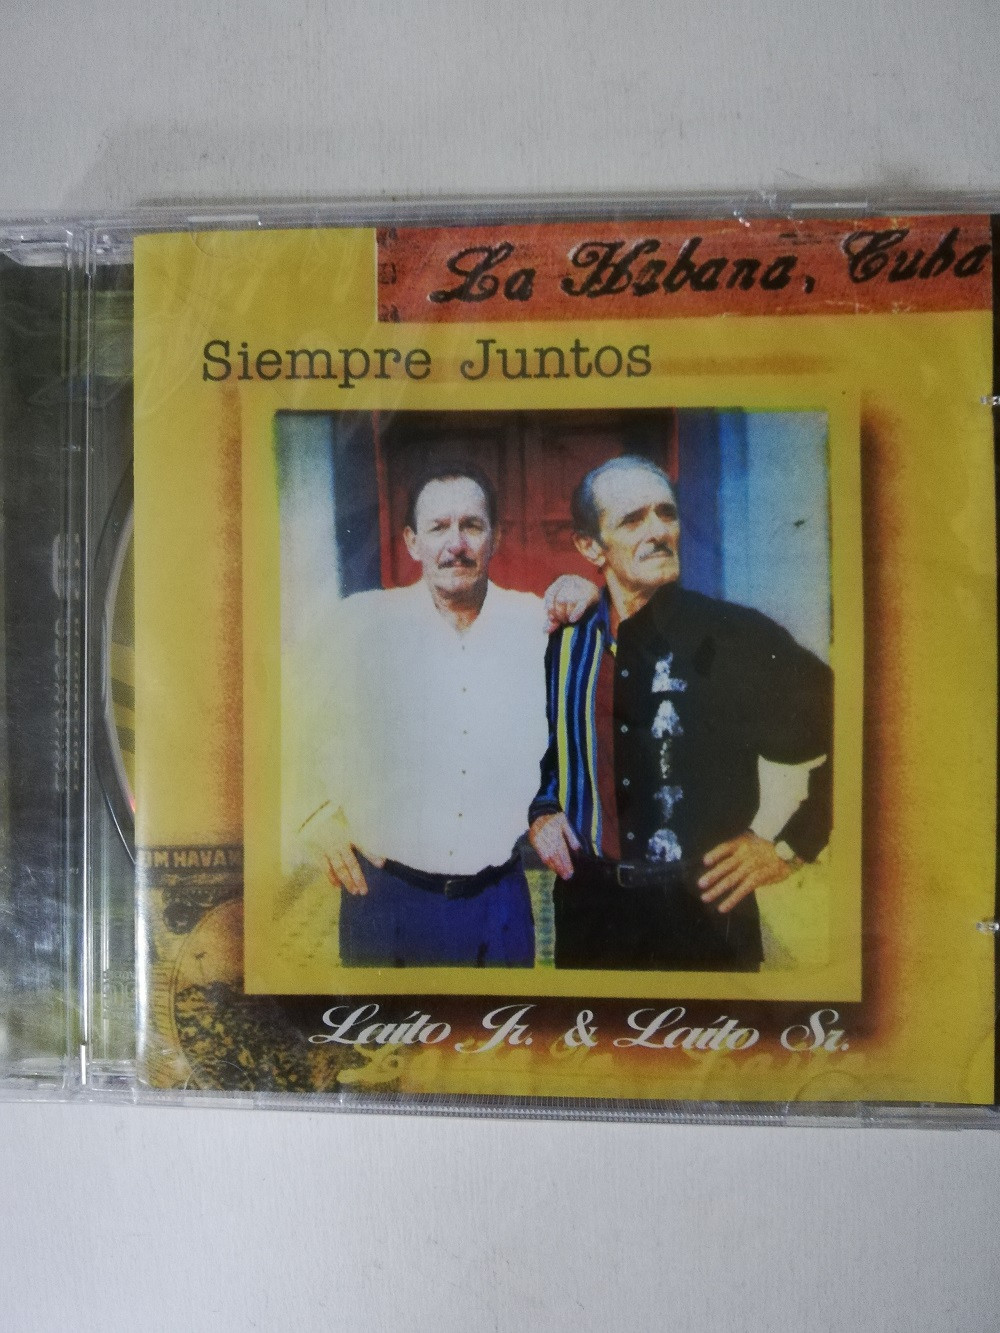 Imagen CD LAITO Jr. & LAITO Sr. - SIEMPRE JUNTOS 1